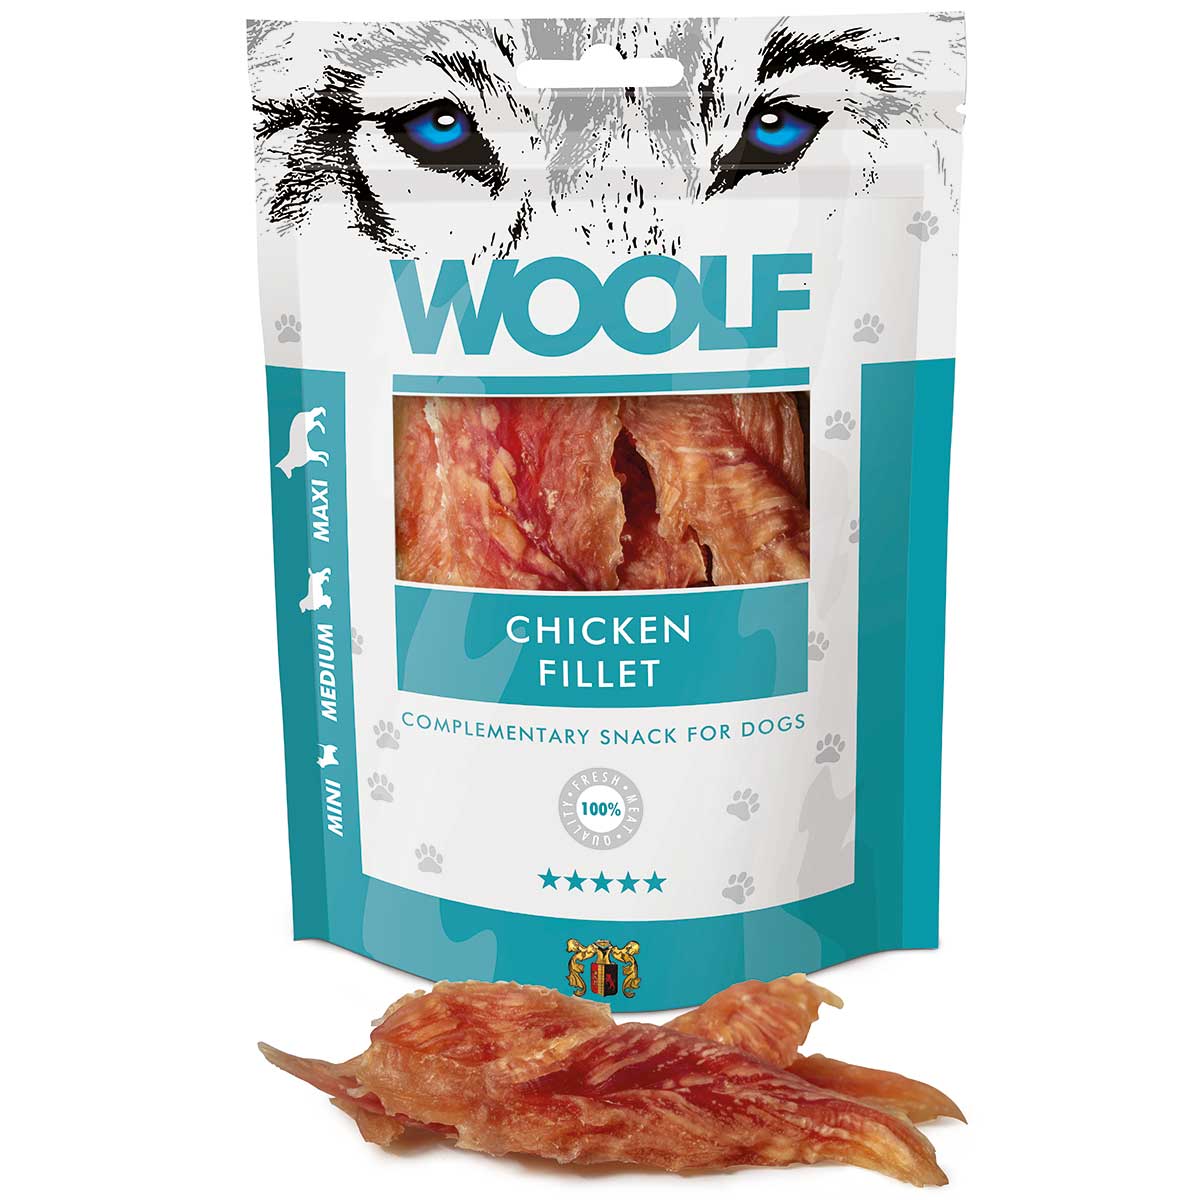 Woolf Dog treat chicken fillet